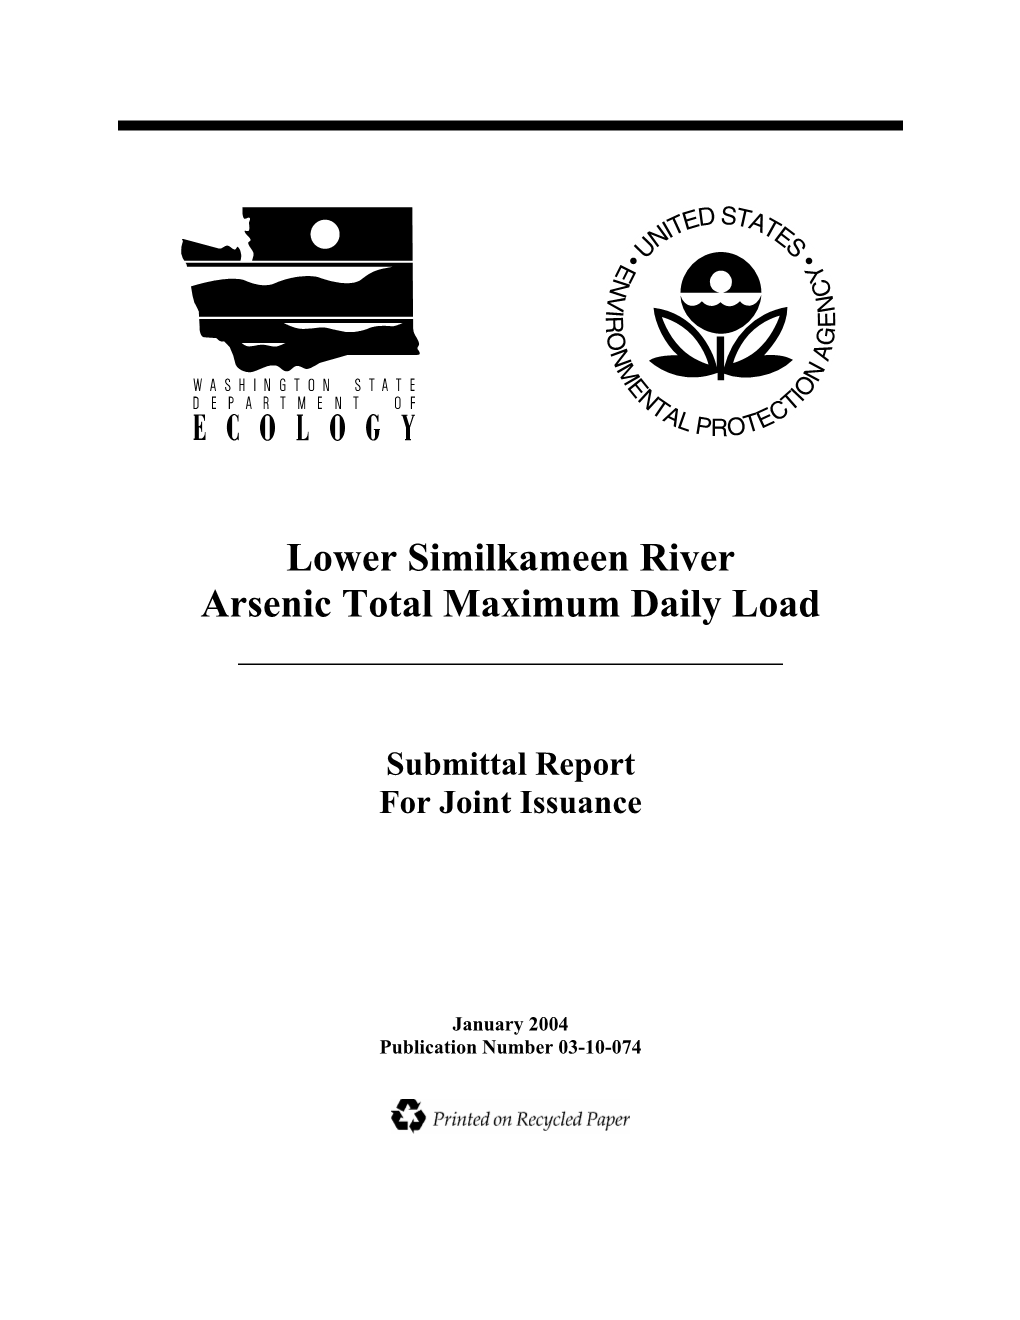 Lower Similkameen River Arsenic Total Maximum Daily Load